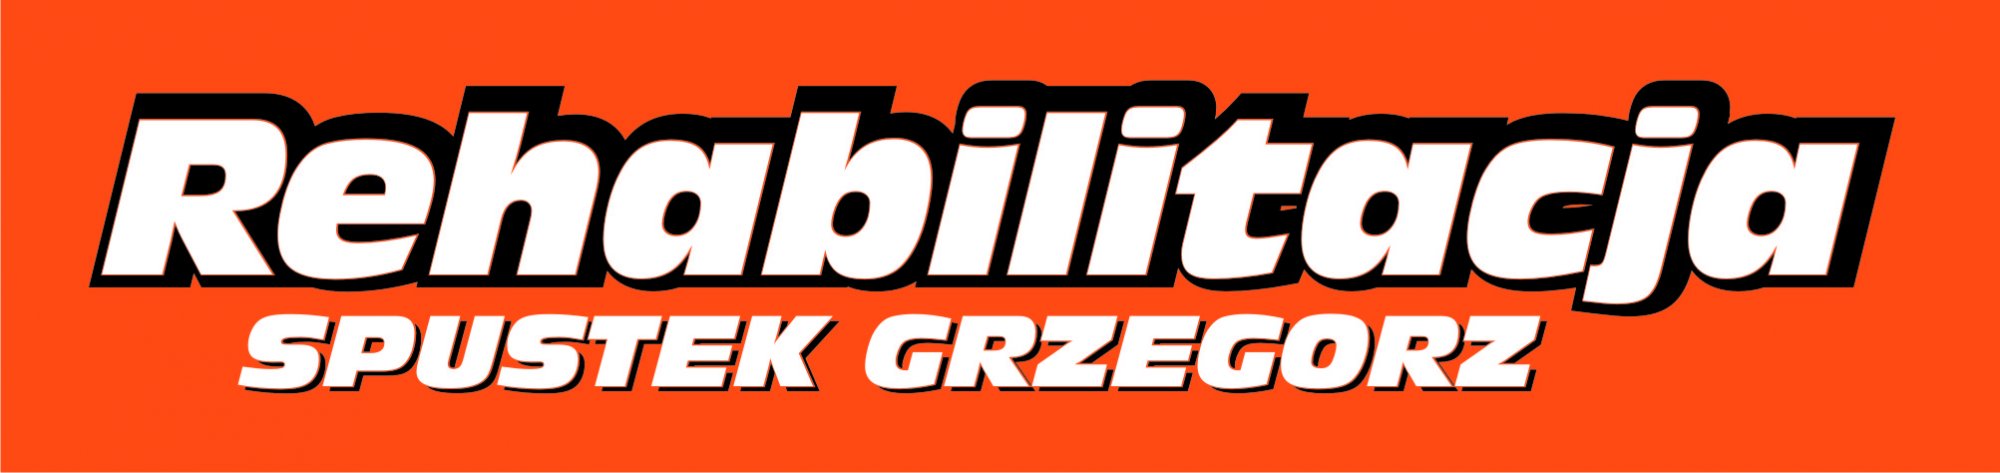 Logo Rehabilitacja Grzegorz Spustek